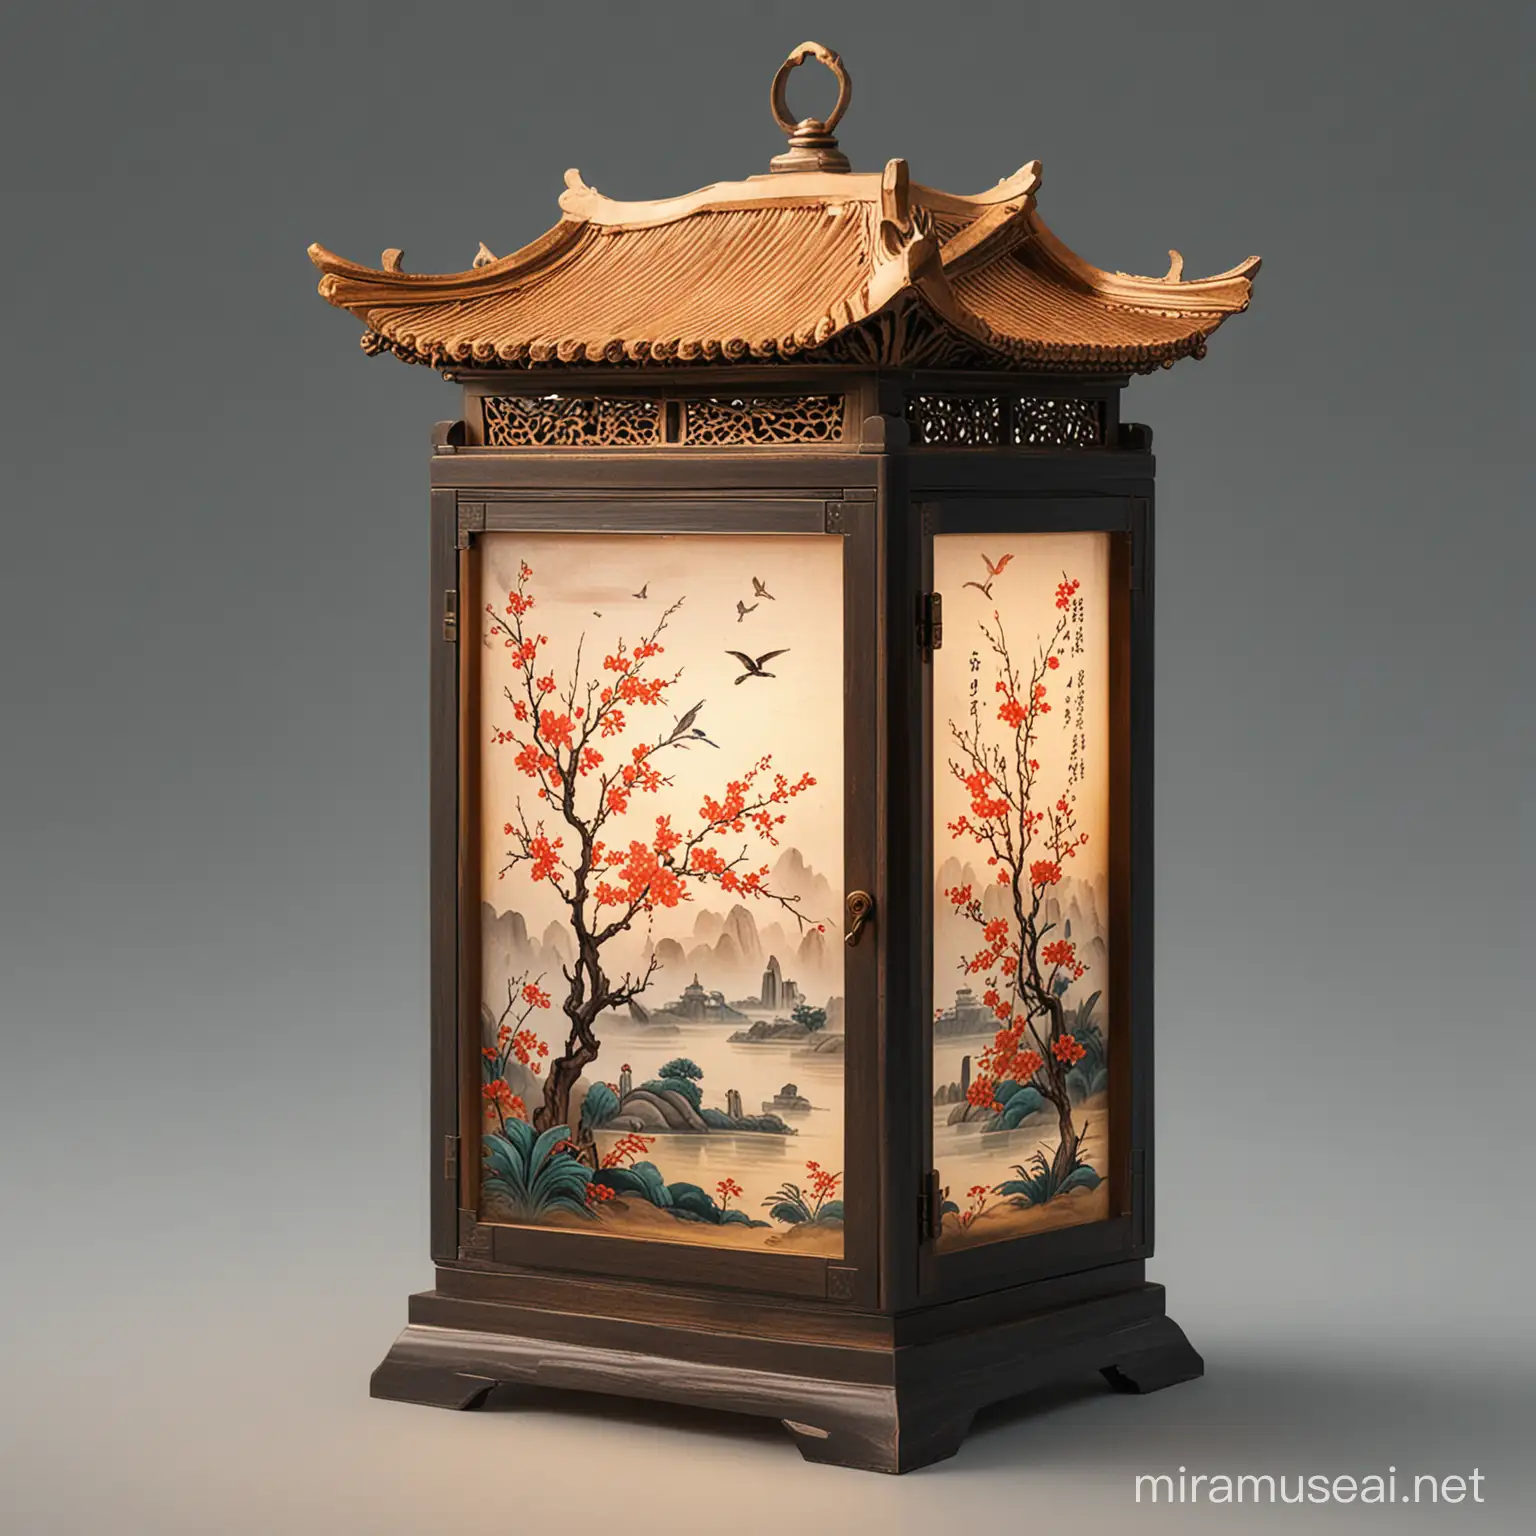 Chinese Style Lamp Box Illuminating a Serene Setting